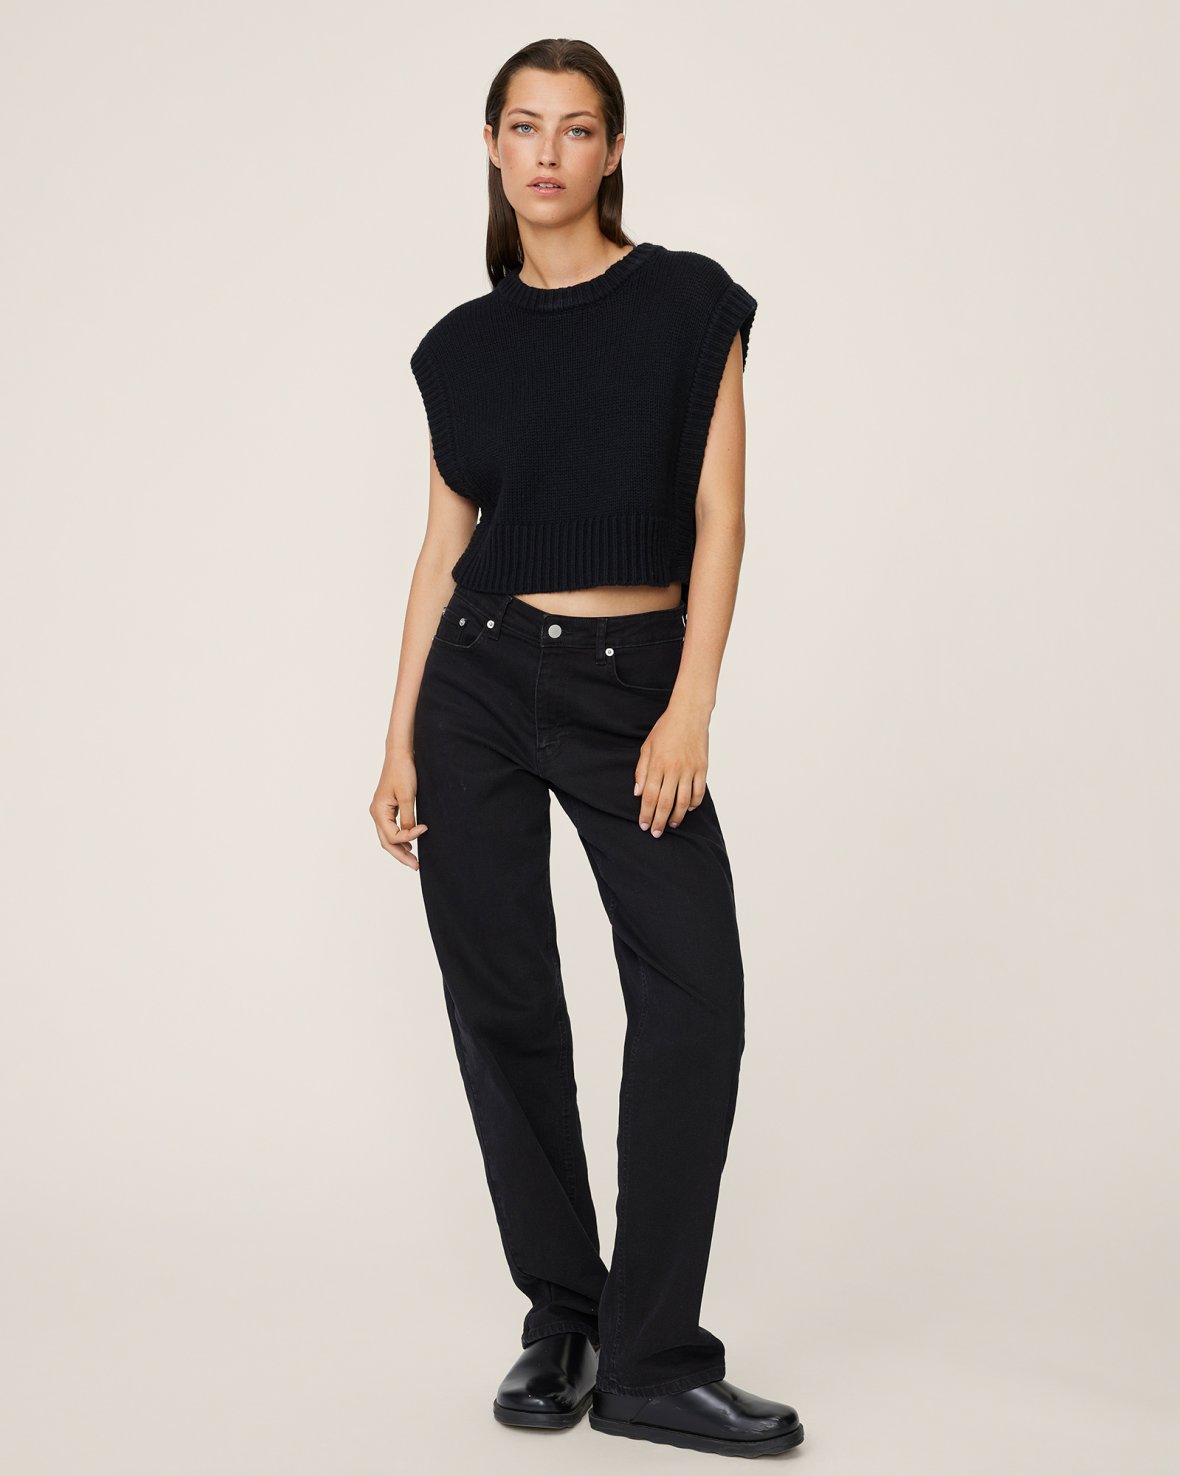 Melana Rikka jeans van Moss Copenhagen — UMA Multibrand Boutique